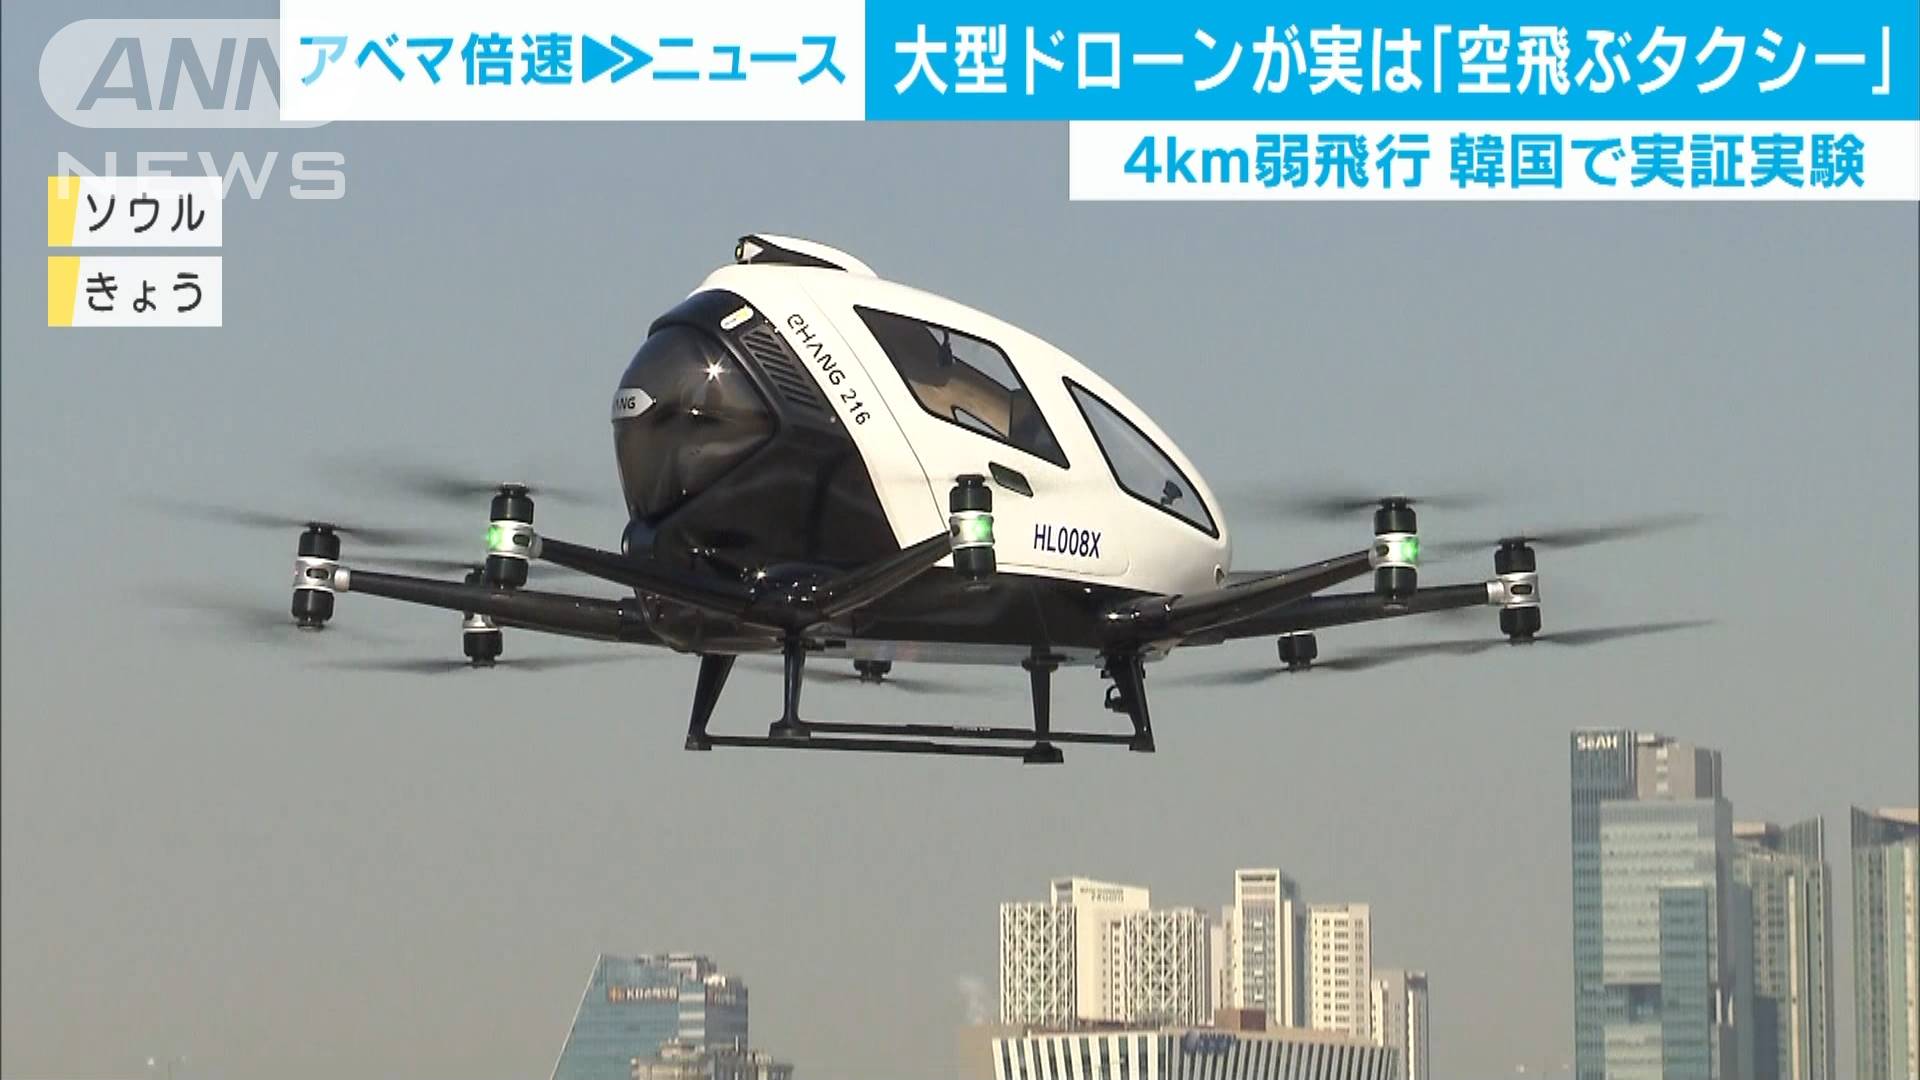 韓国で 空飛ぶタクシー 実証実験 約4キロ飛行 テレ朝news テレビ朝日のニュースサイト